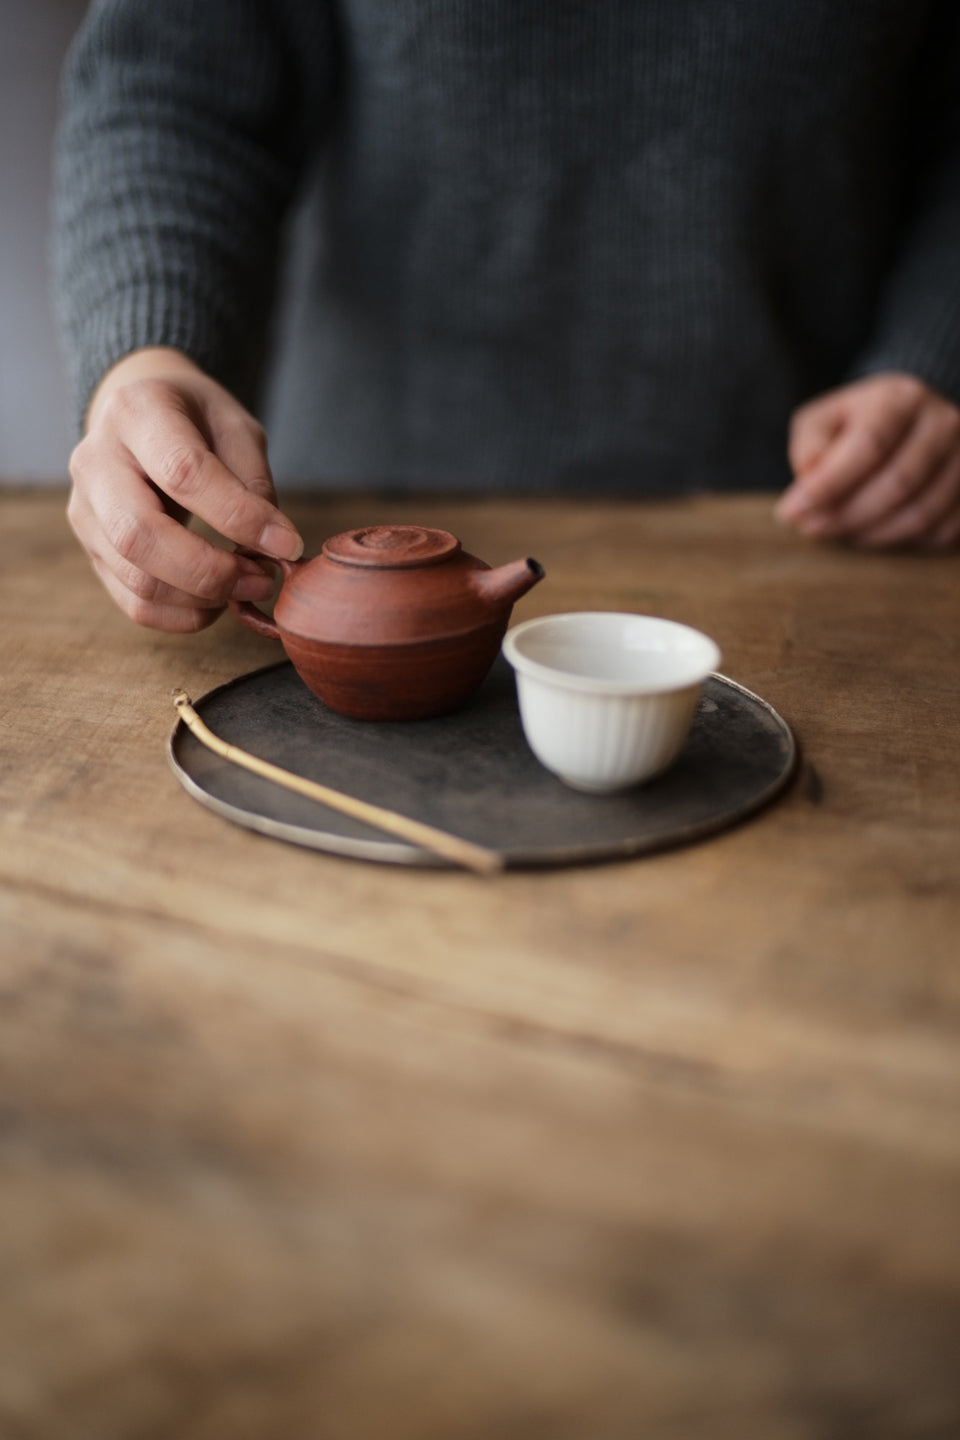 Huishan Small Red Teapot (Cheng Wei)